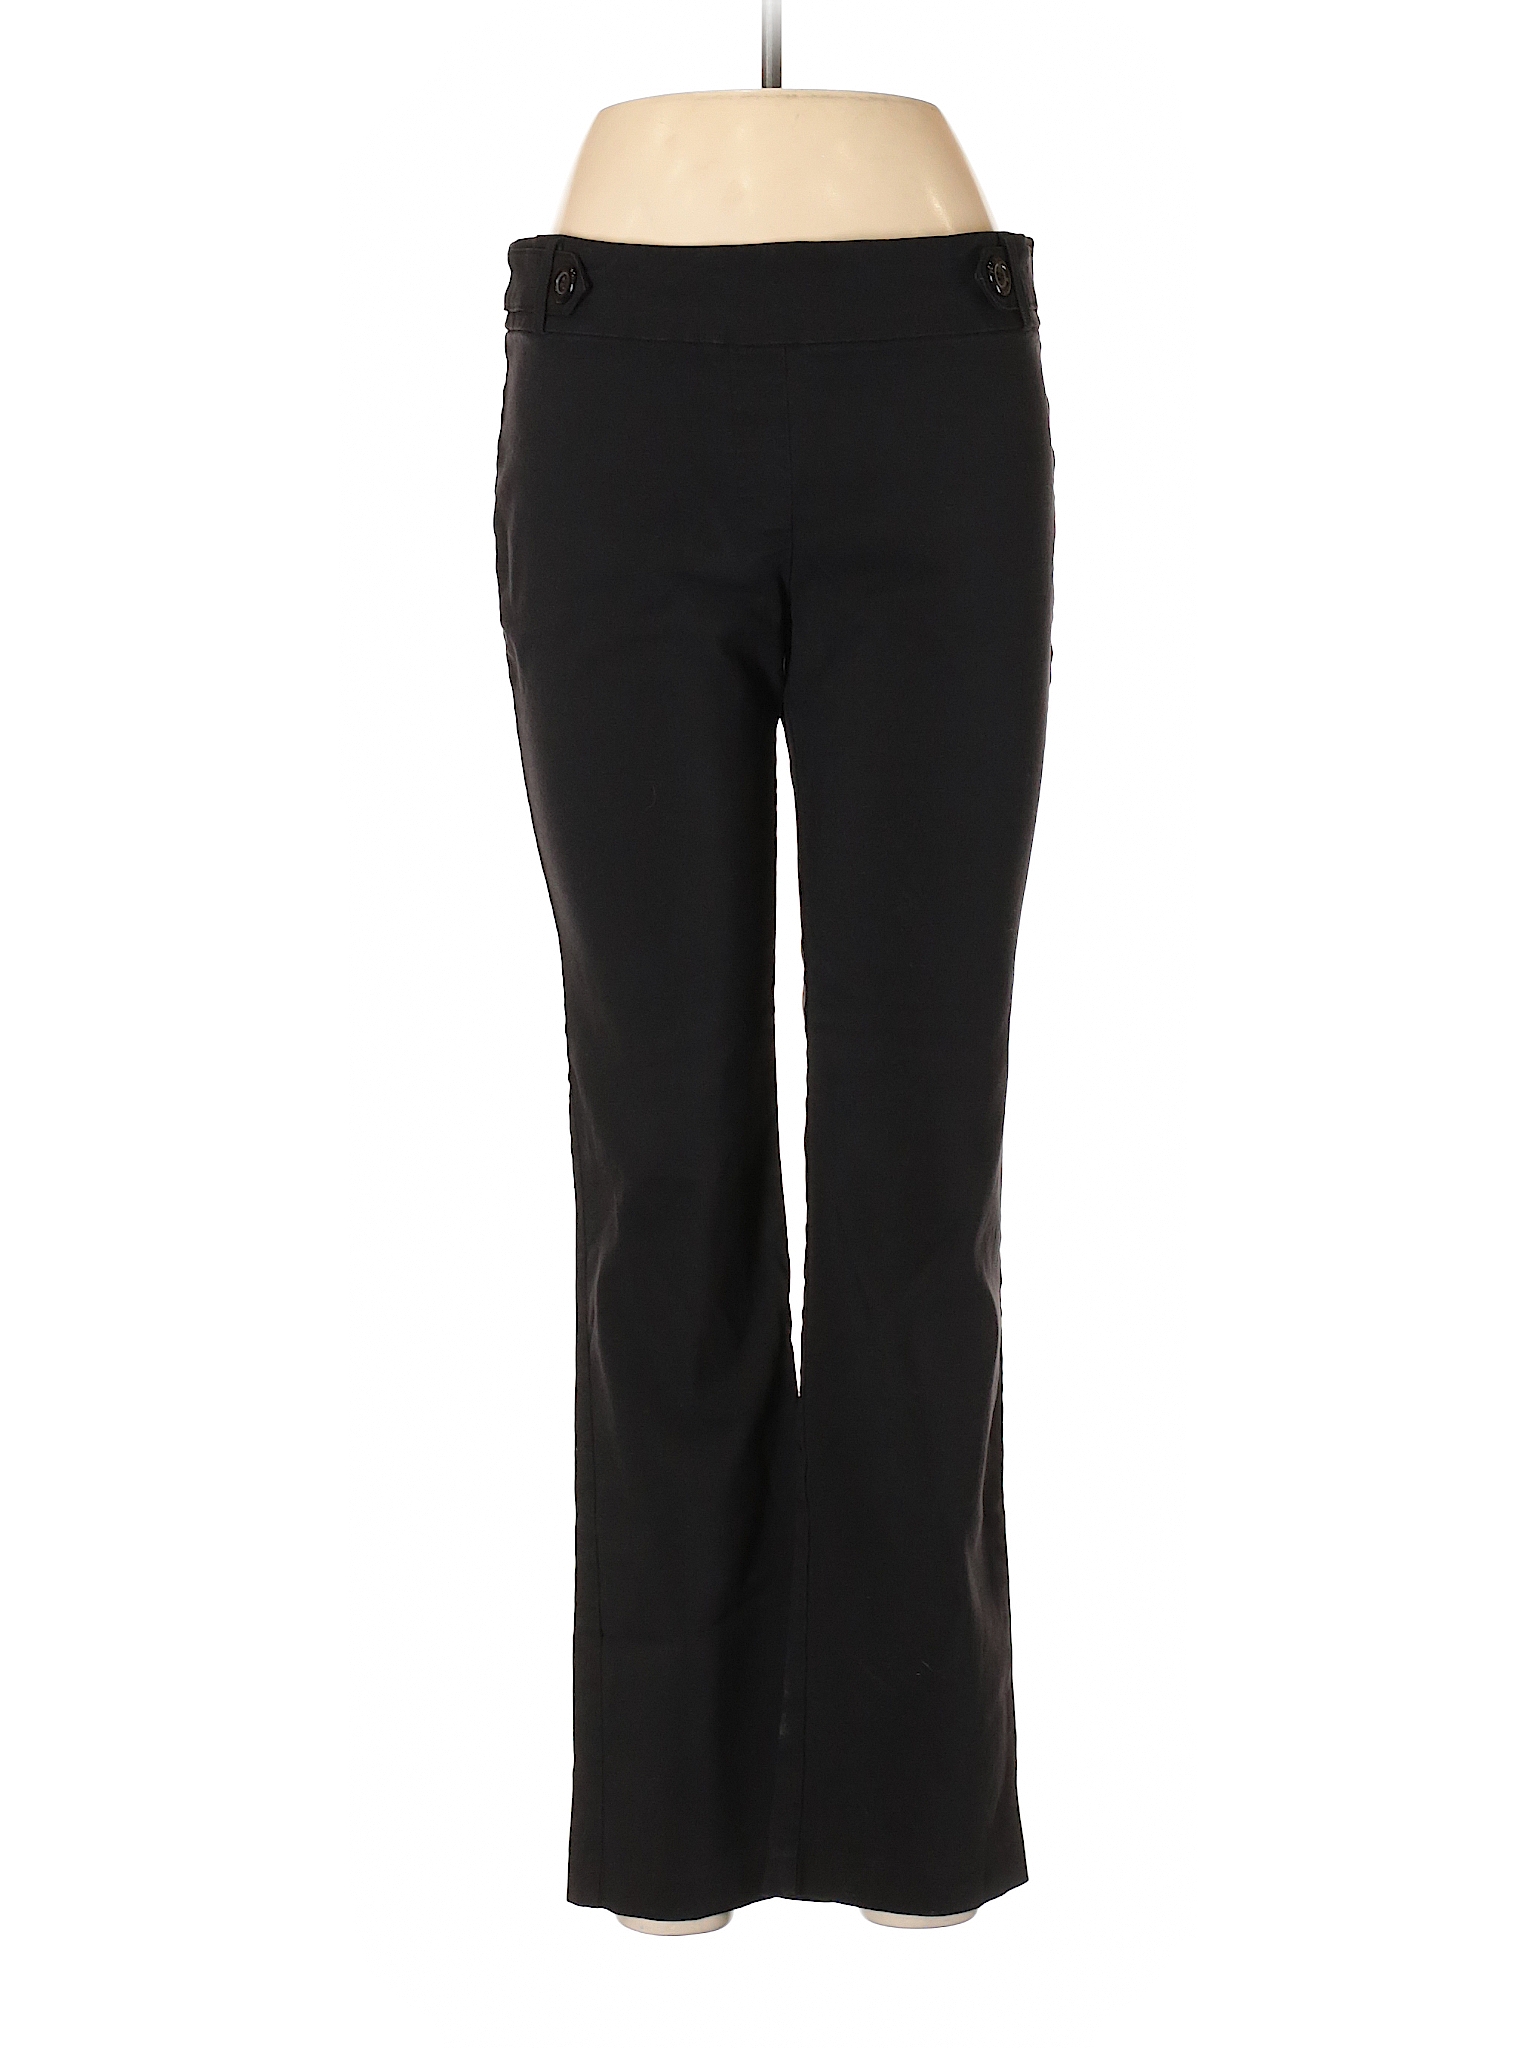 SOHO Apparel Ltd Solid Black Casual Pants Size L - 72% off | thredUP